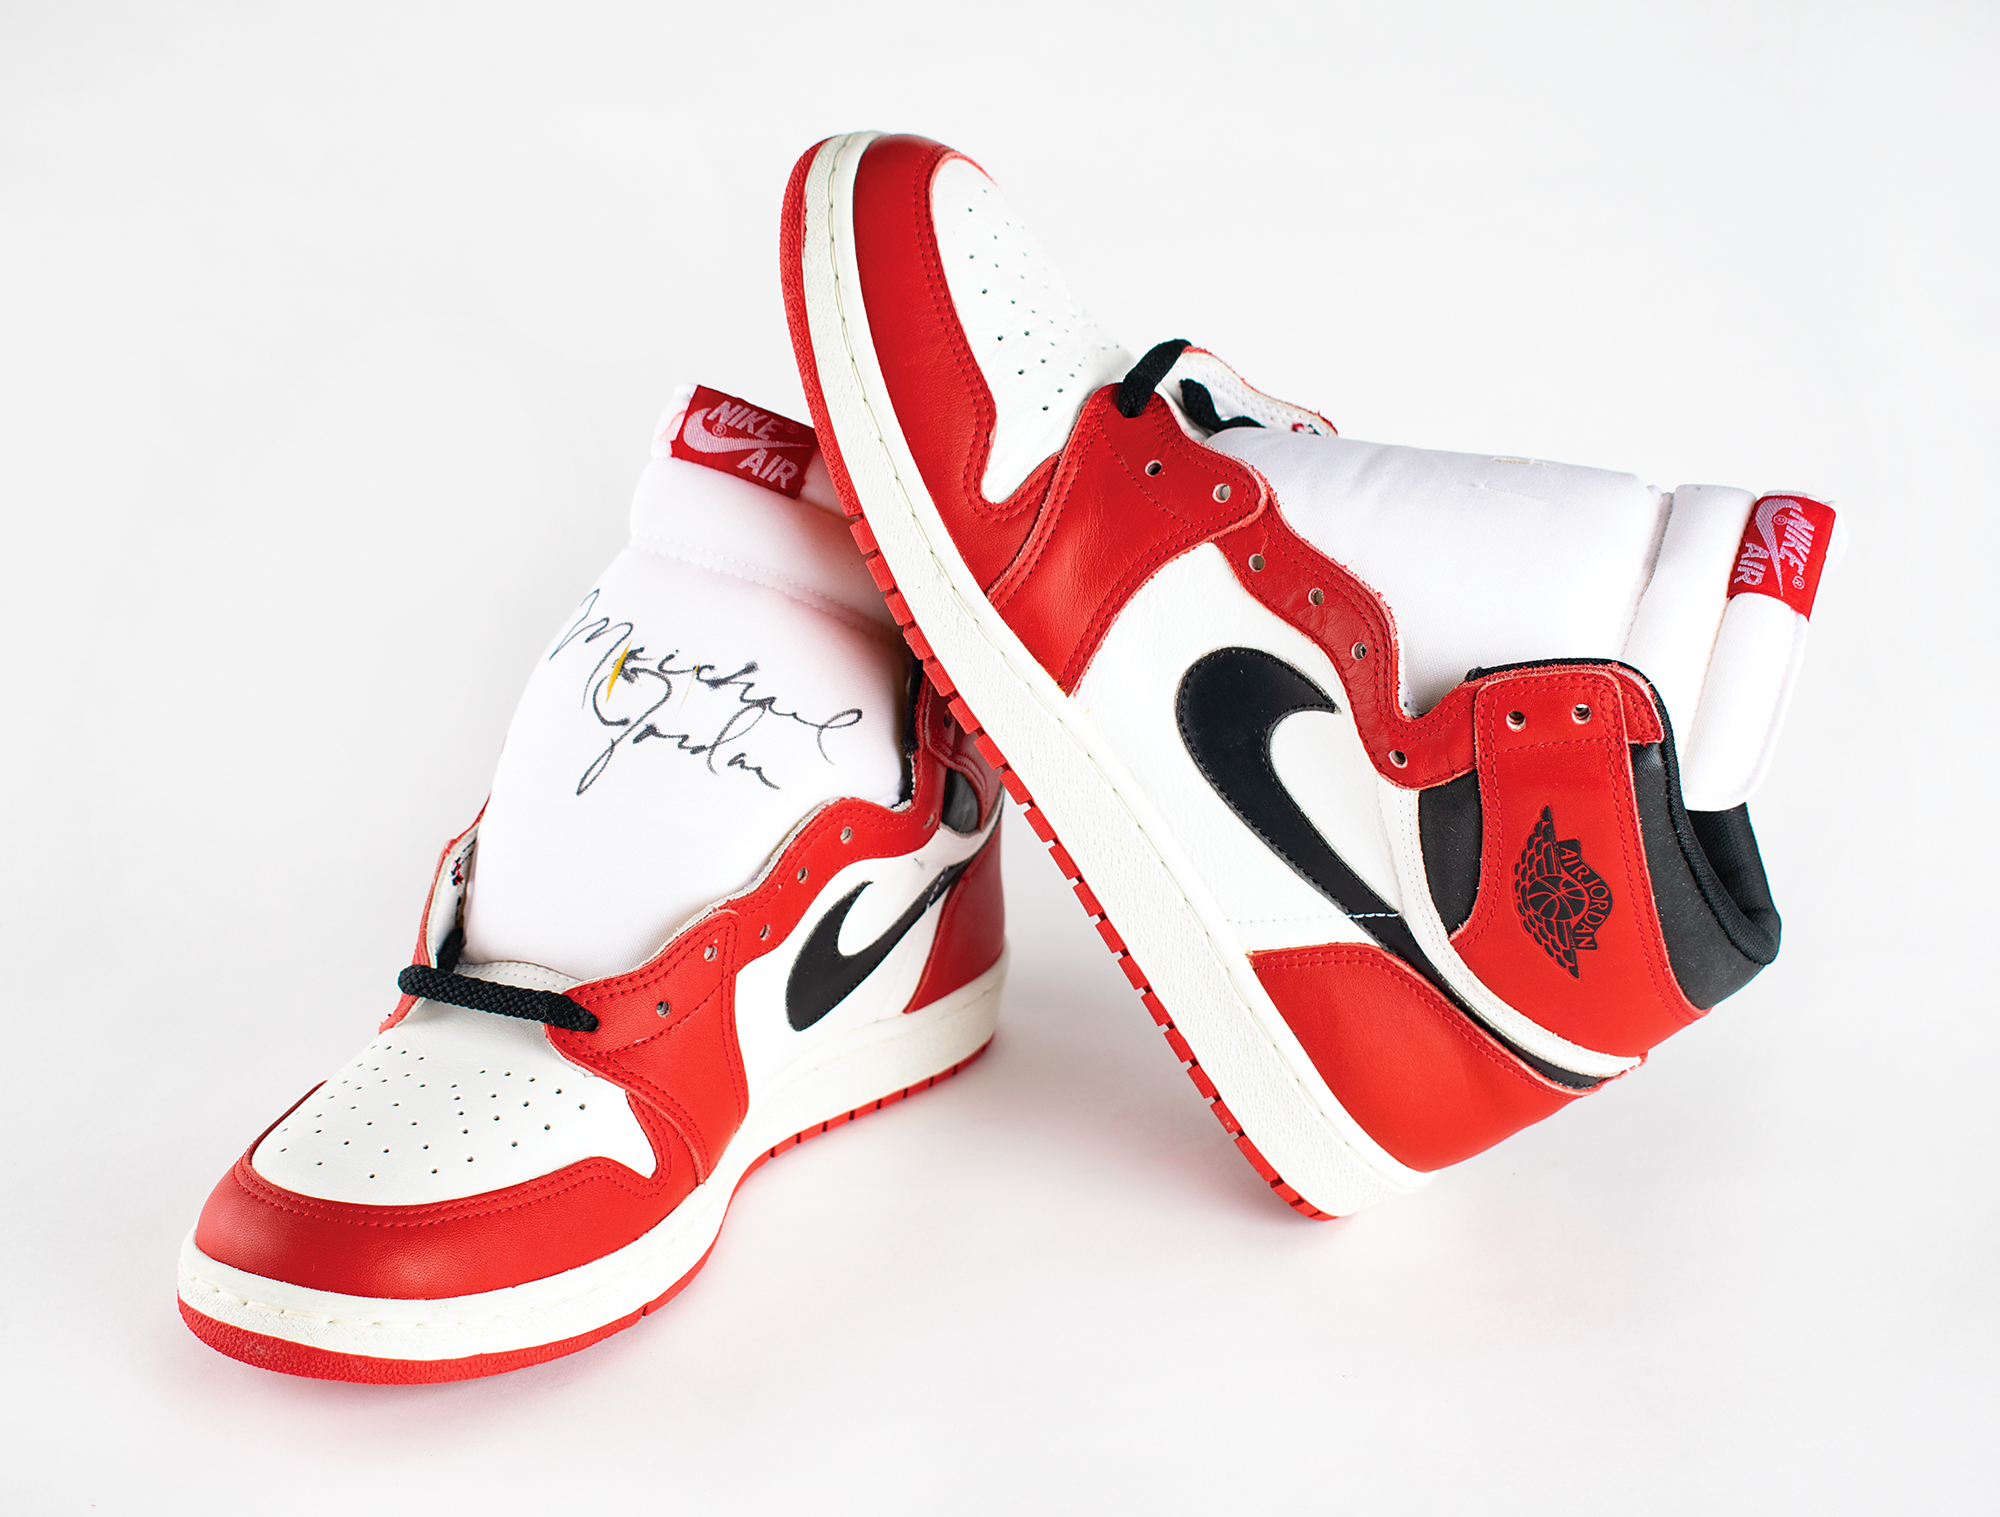 Michael Jordan Signed 1985 'Player Sample' Air Jordan 1s, Sizes 13, 13.5, VICTORIAM, PART II, 2023